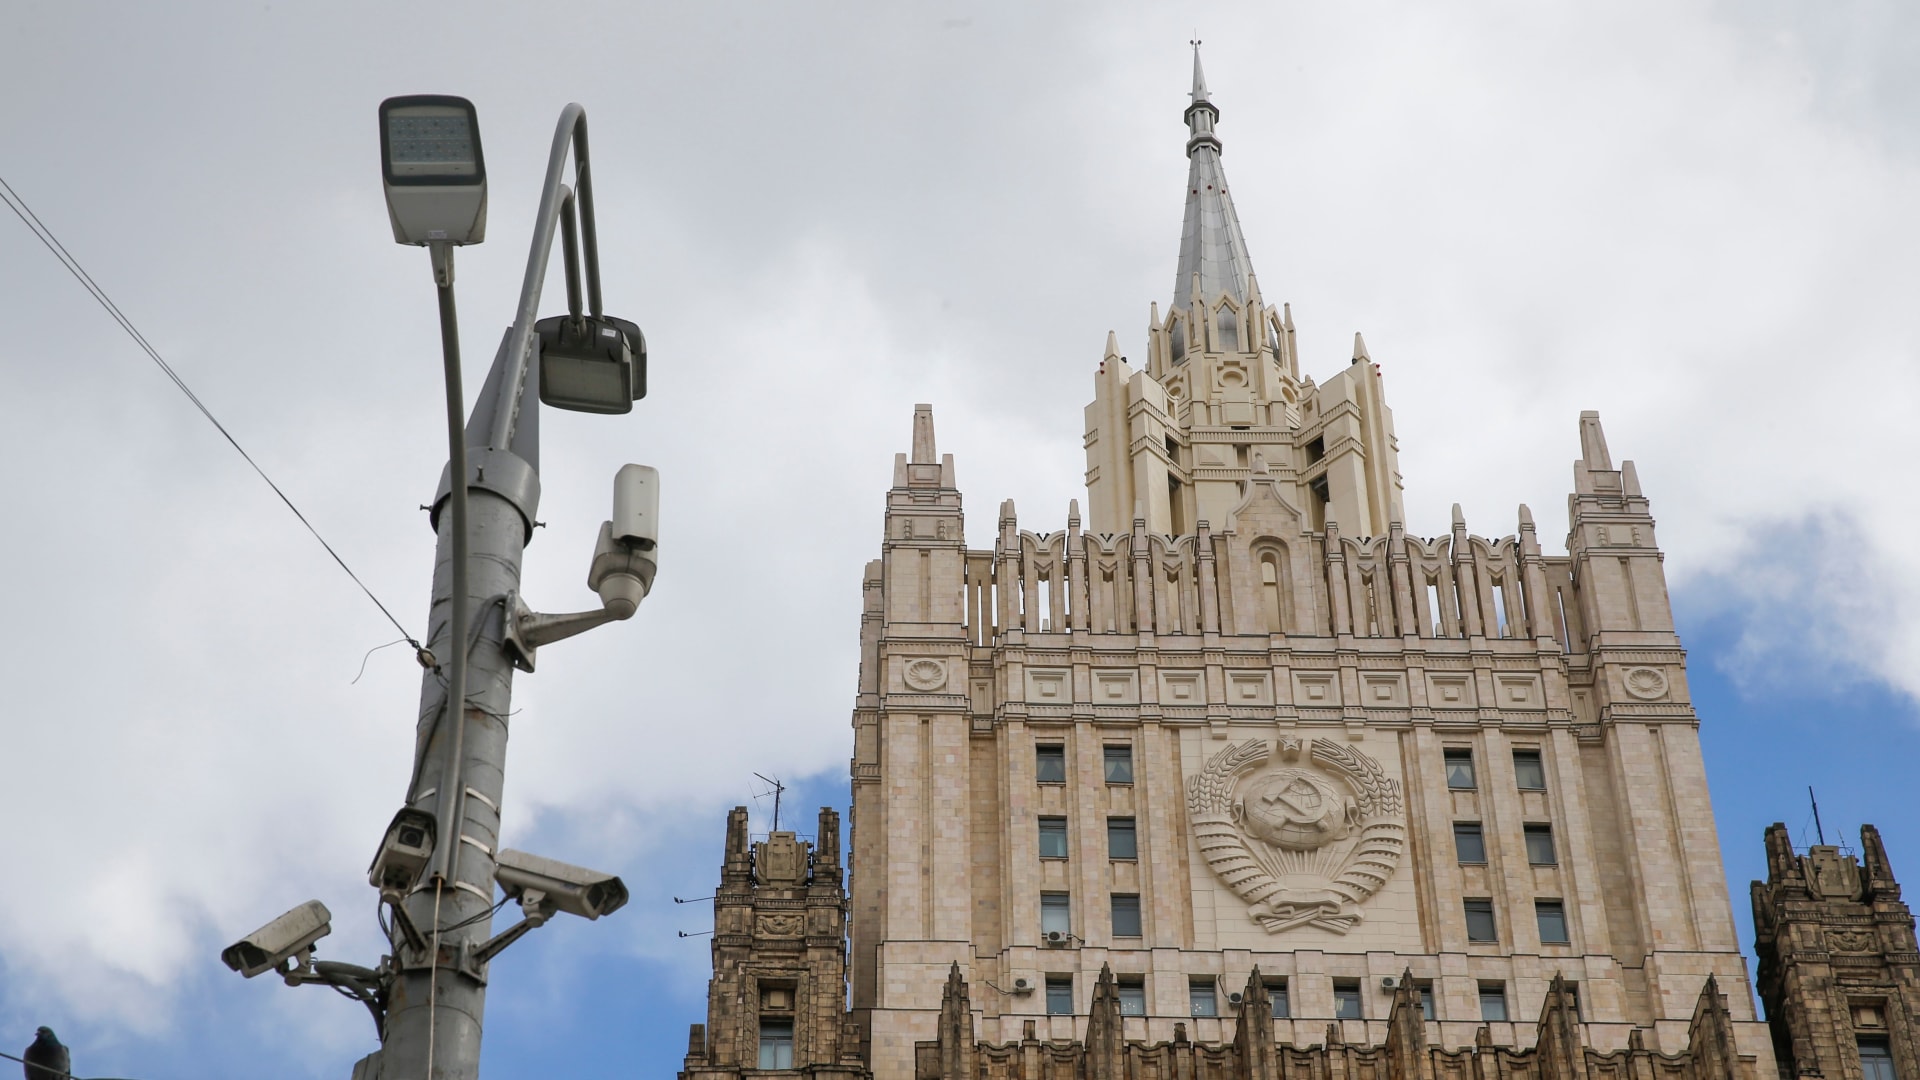 مذيع يسأل لافروف: هل تعتبر روسيا نفسها في حالة حرب مع الناتو؟.. هكذا رد